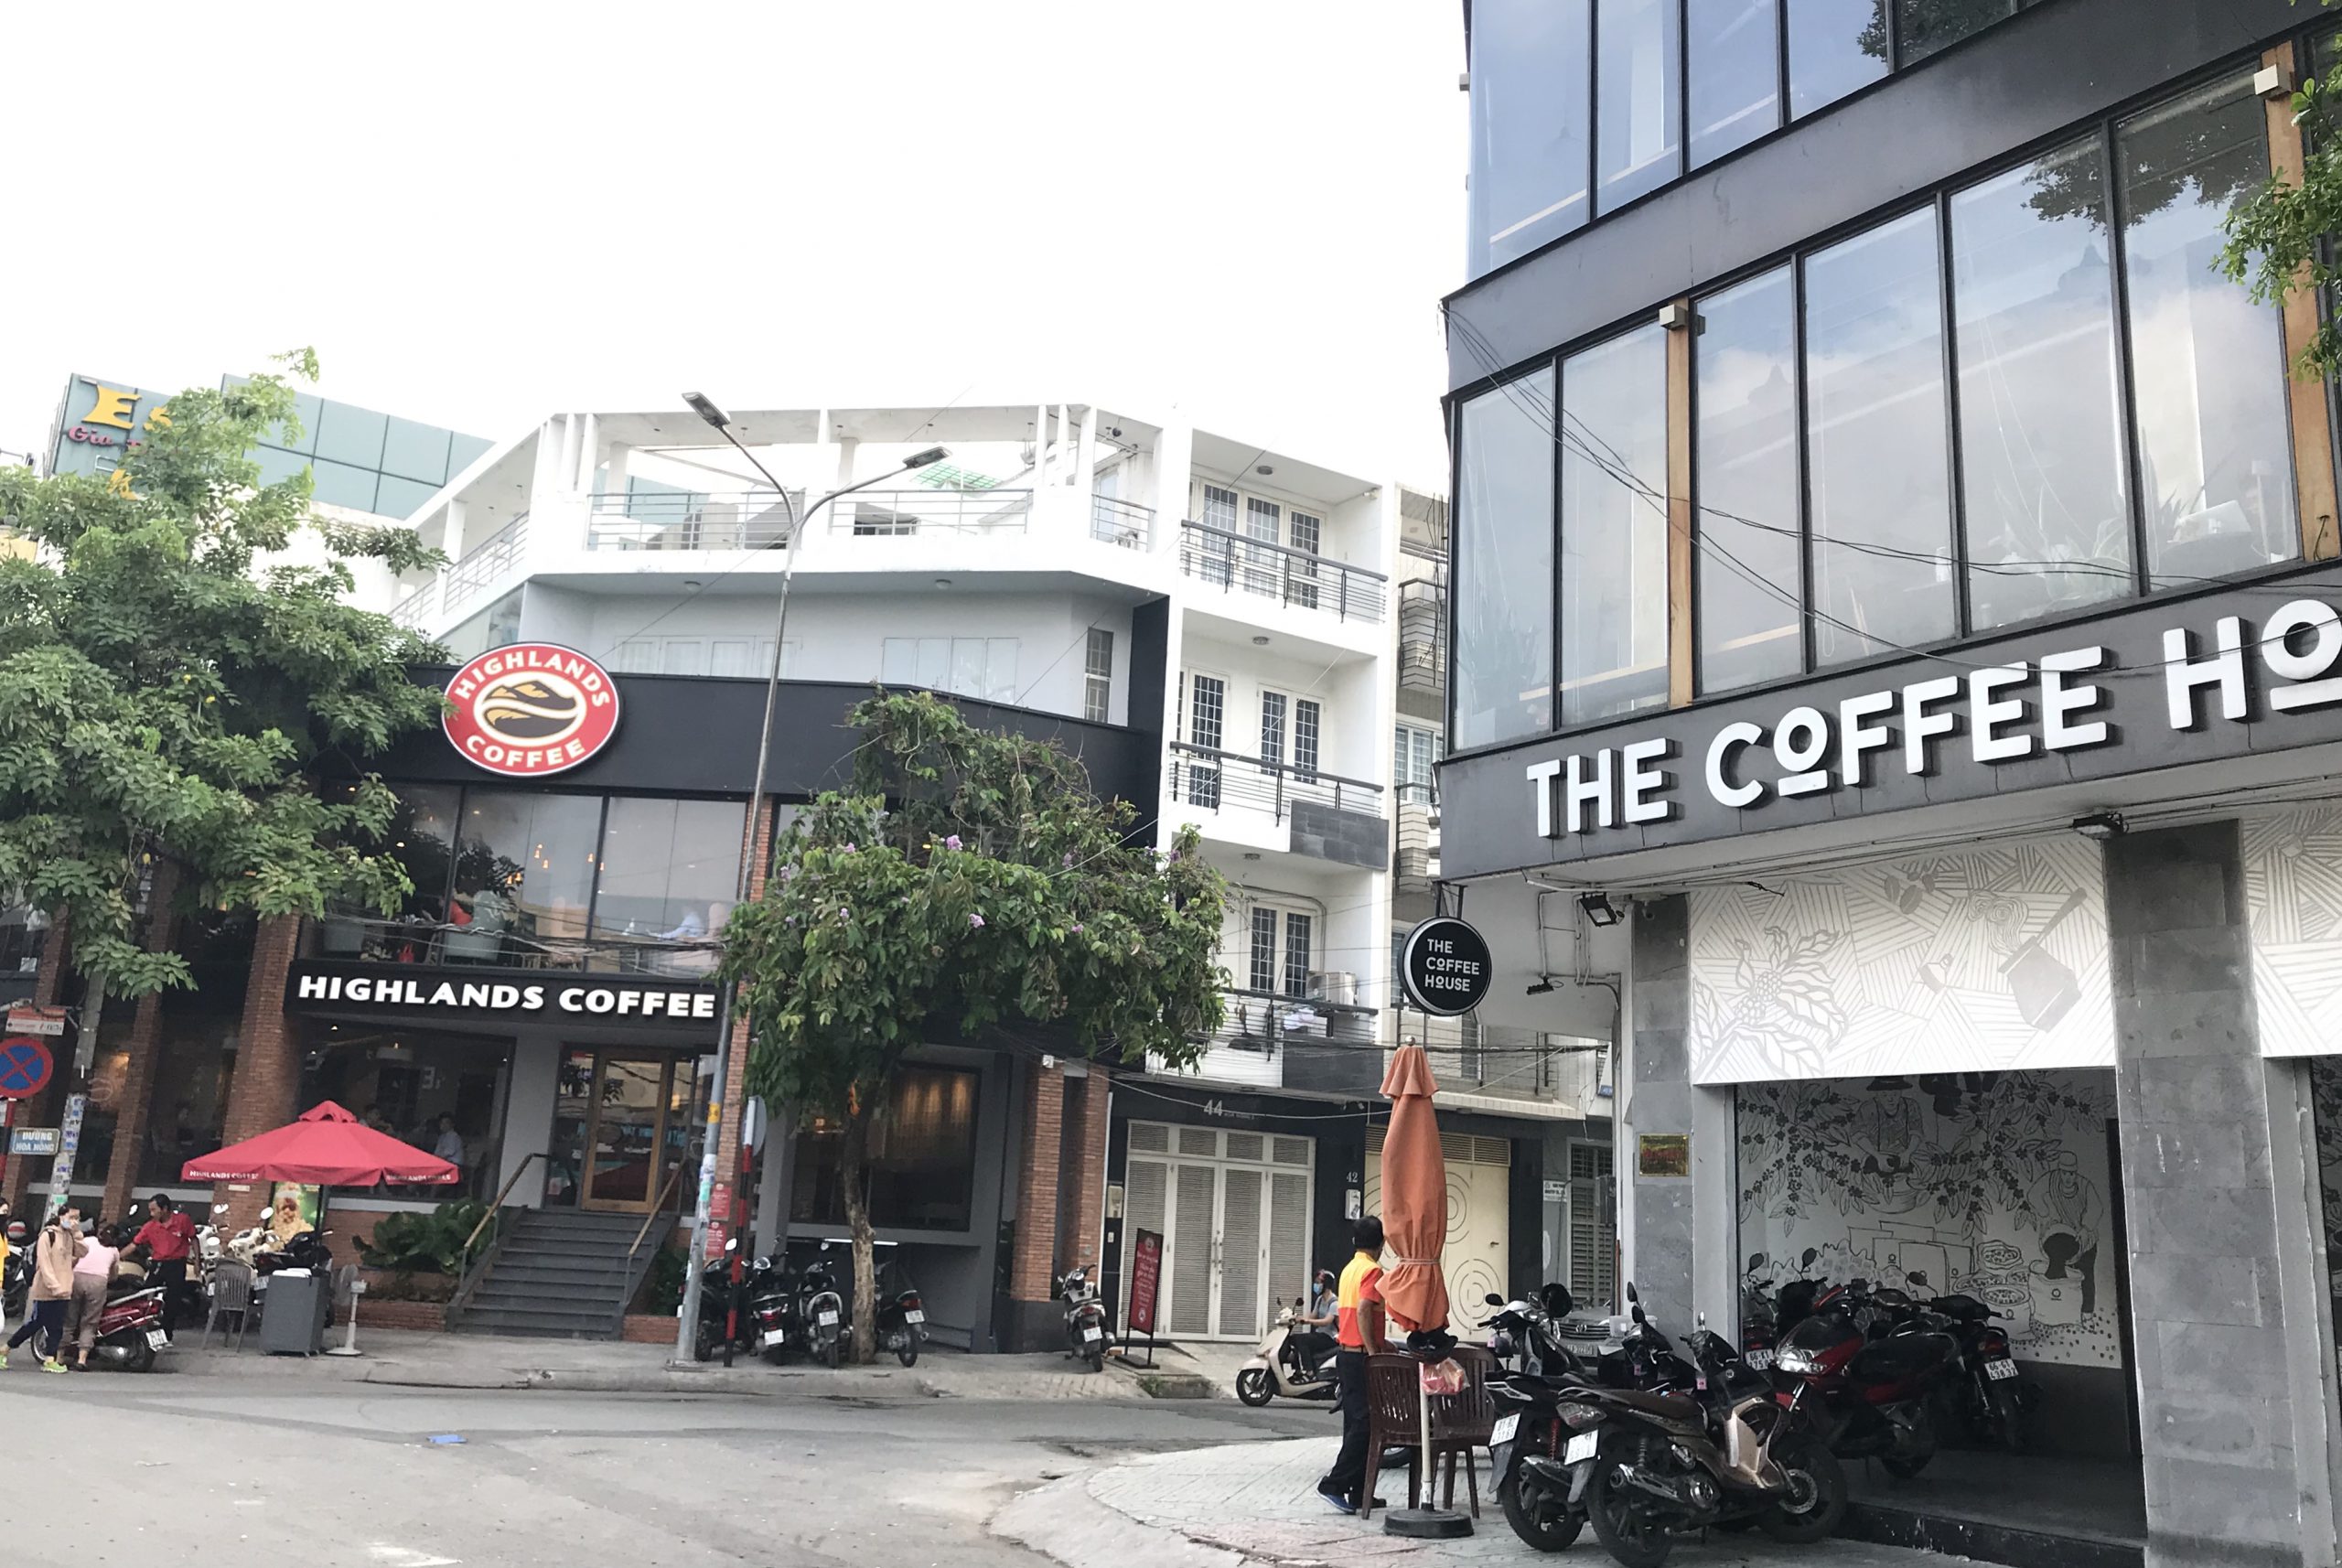 Highlands Coffee và The Coffee House nằm đối diện nhau tại Vòng xoay Trần Khắc Chân (quân Phú Nhuận, TP HCM). Ảnh: Phúc Minh.